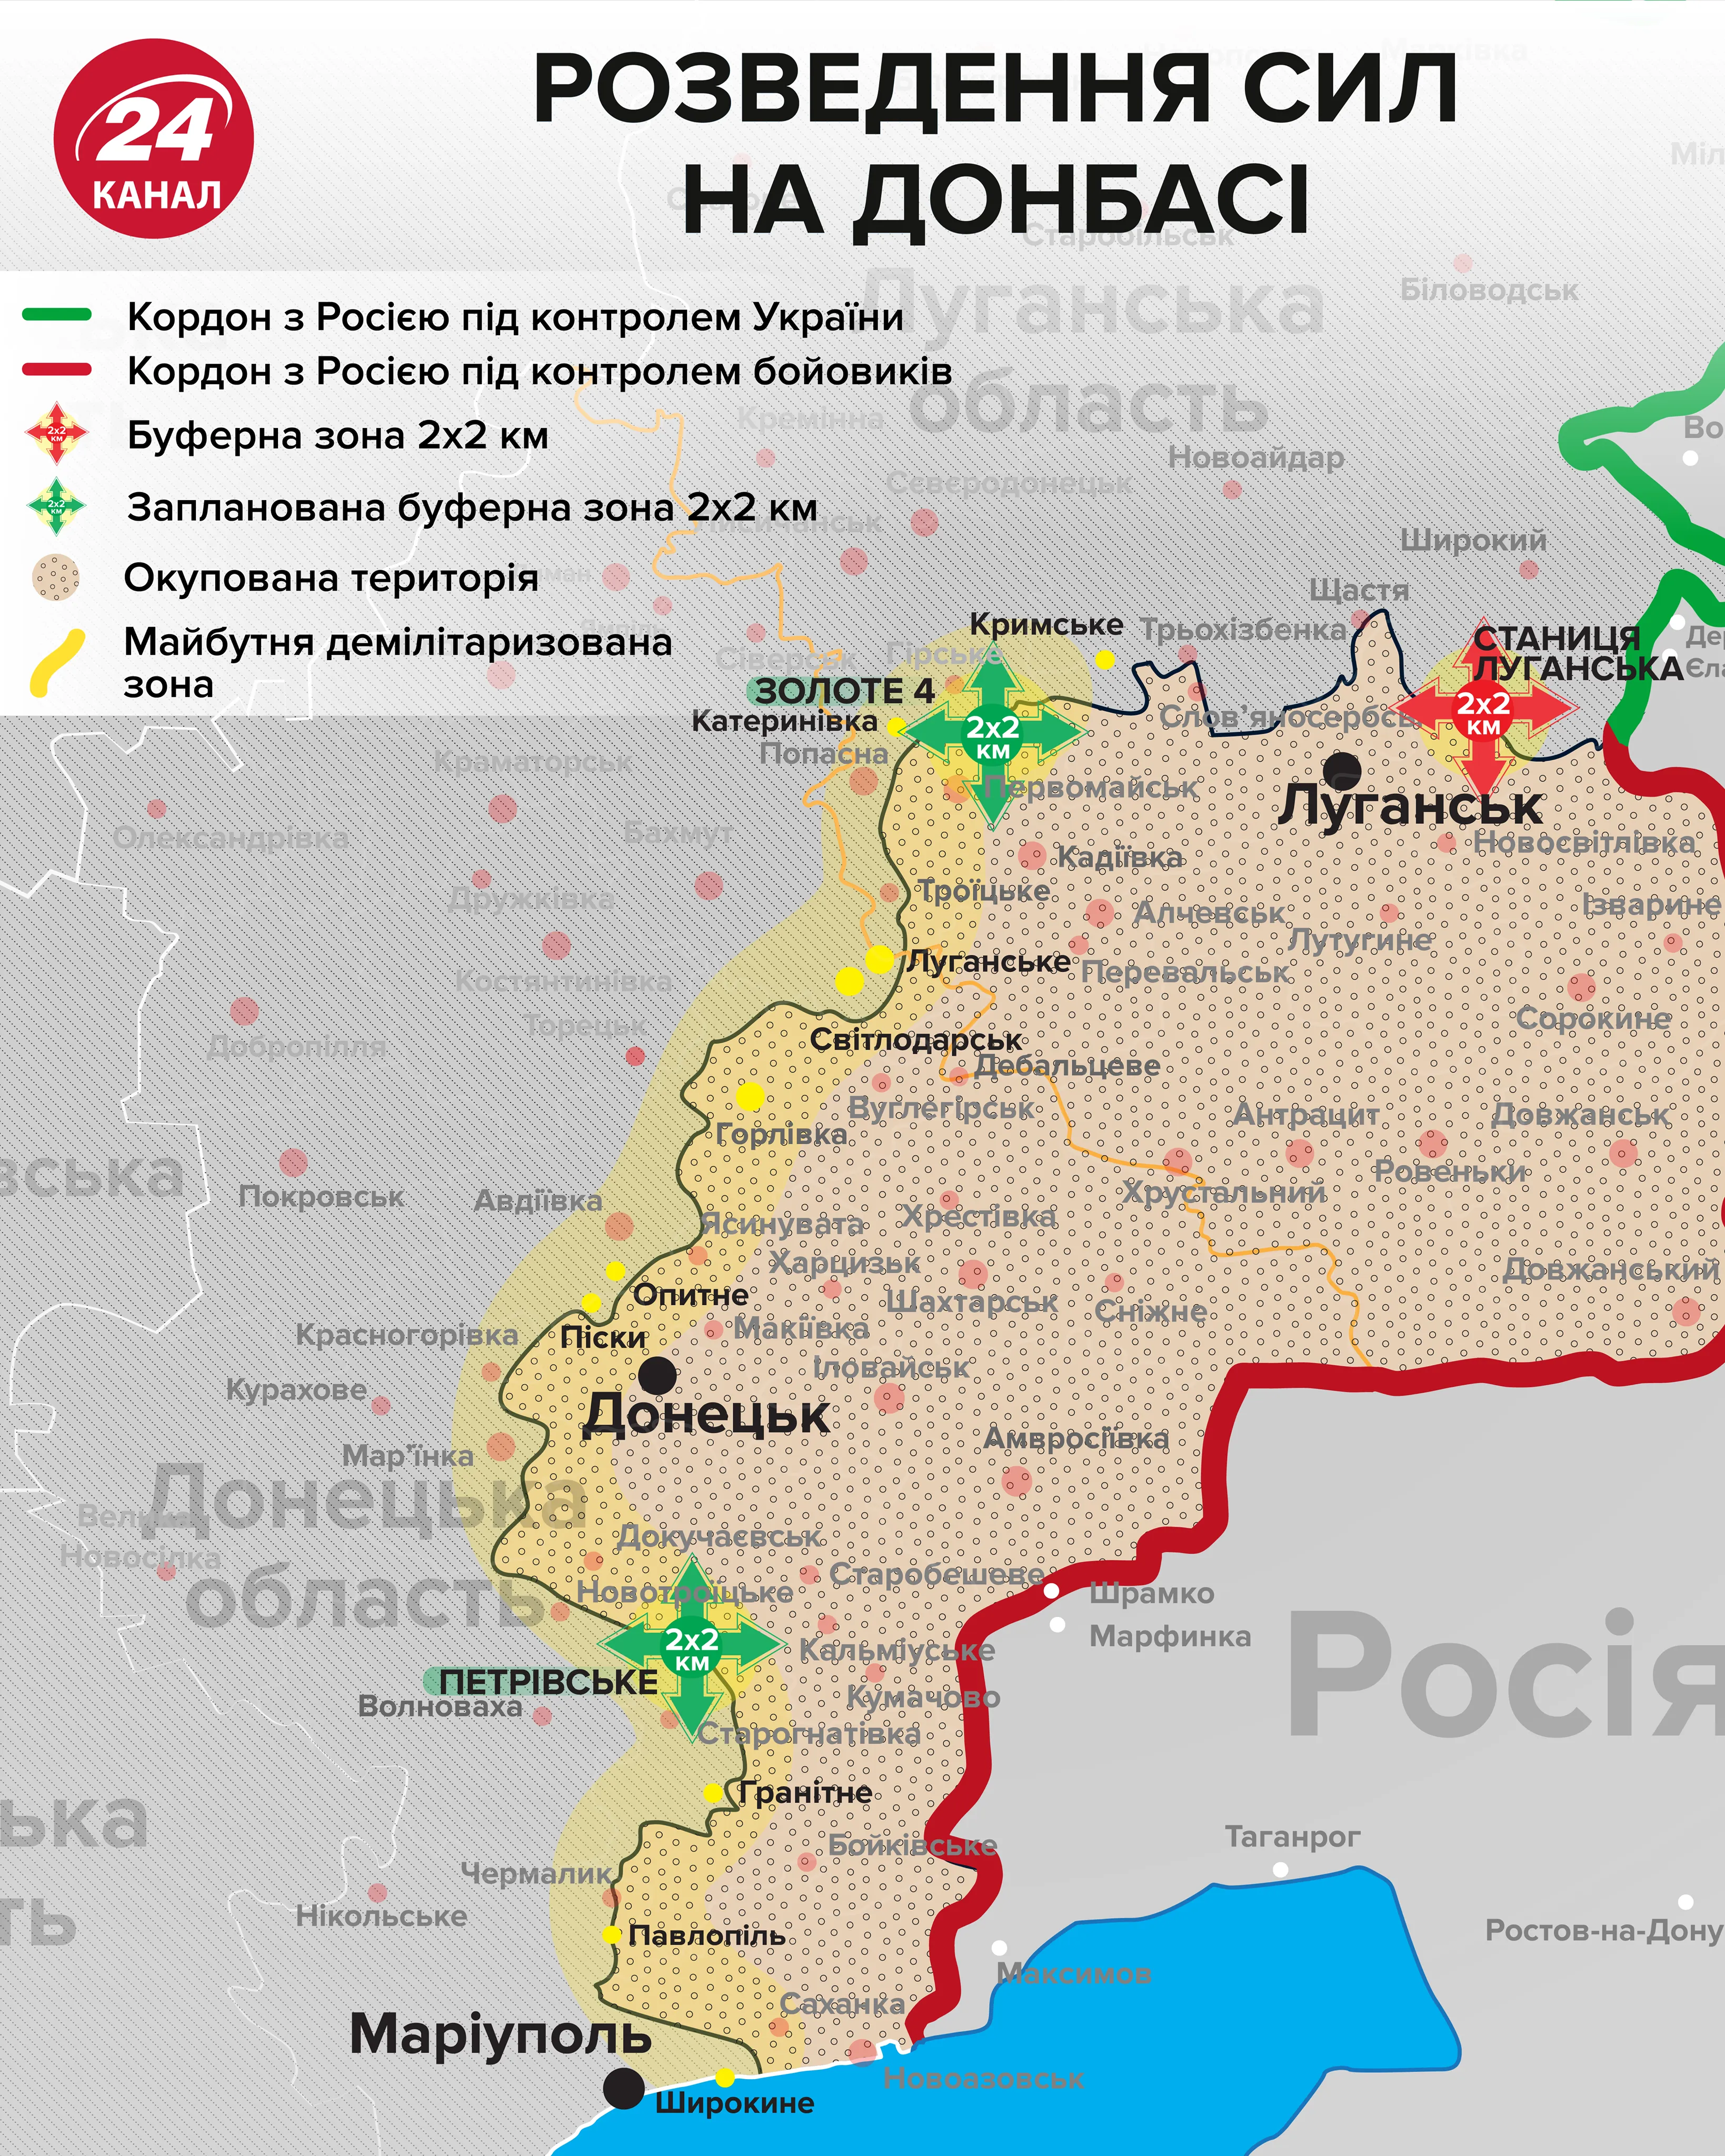 Як може виглядати ситуація на Донбасі після розведення сил